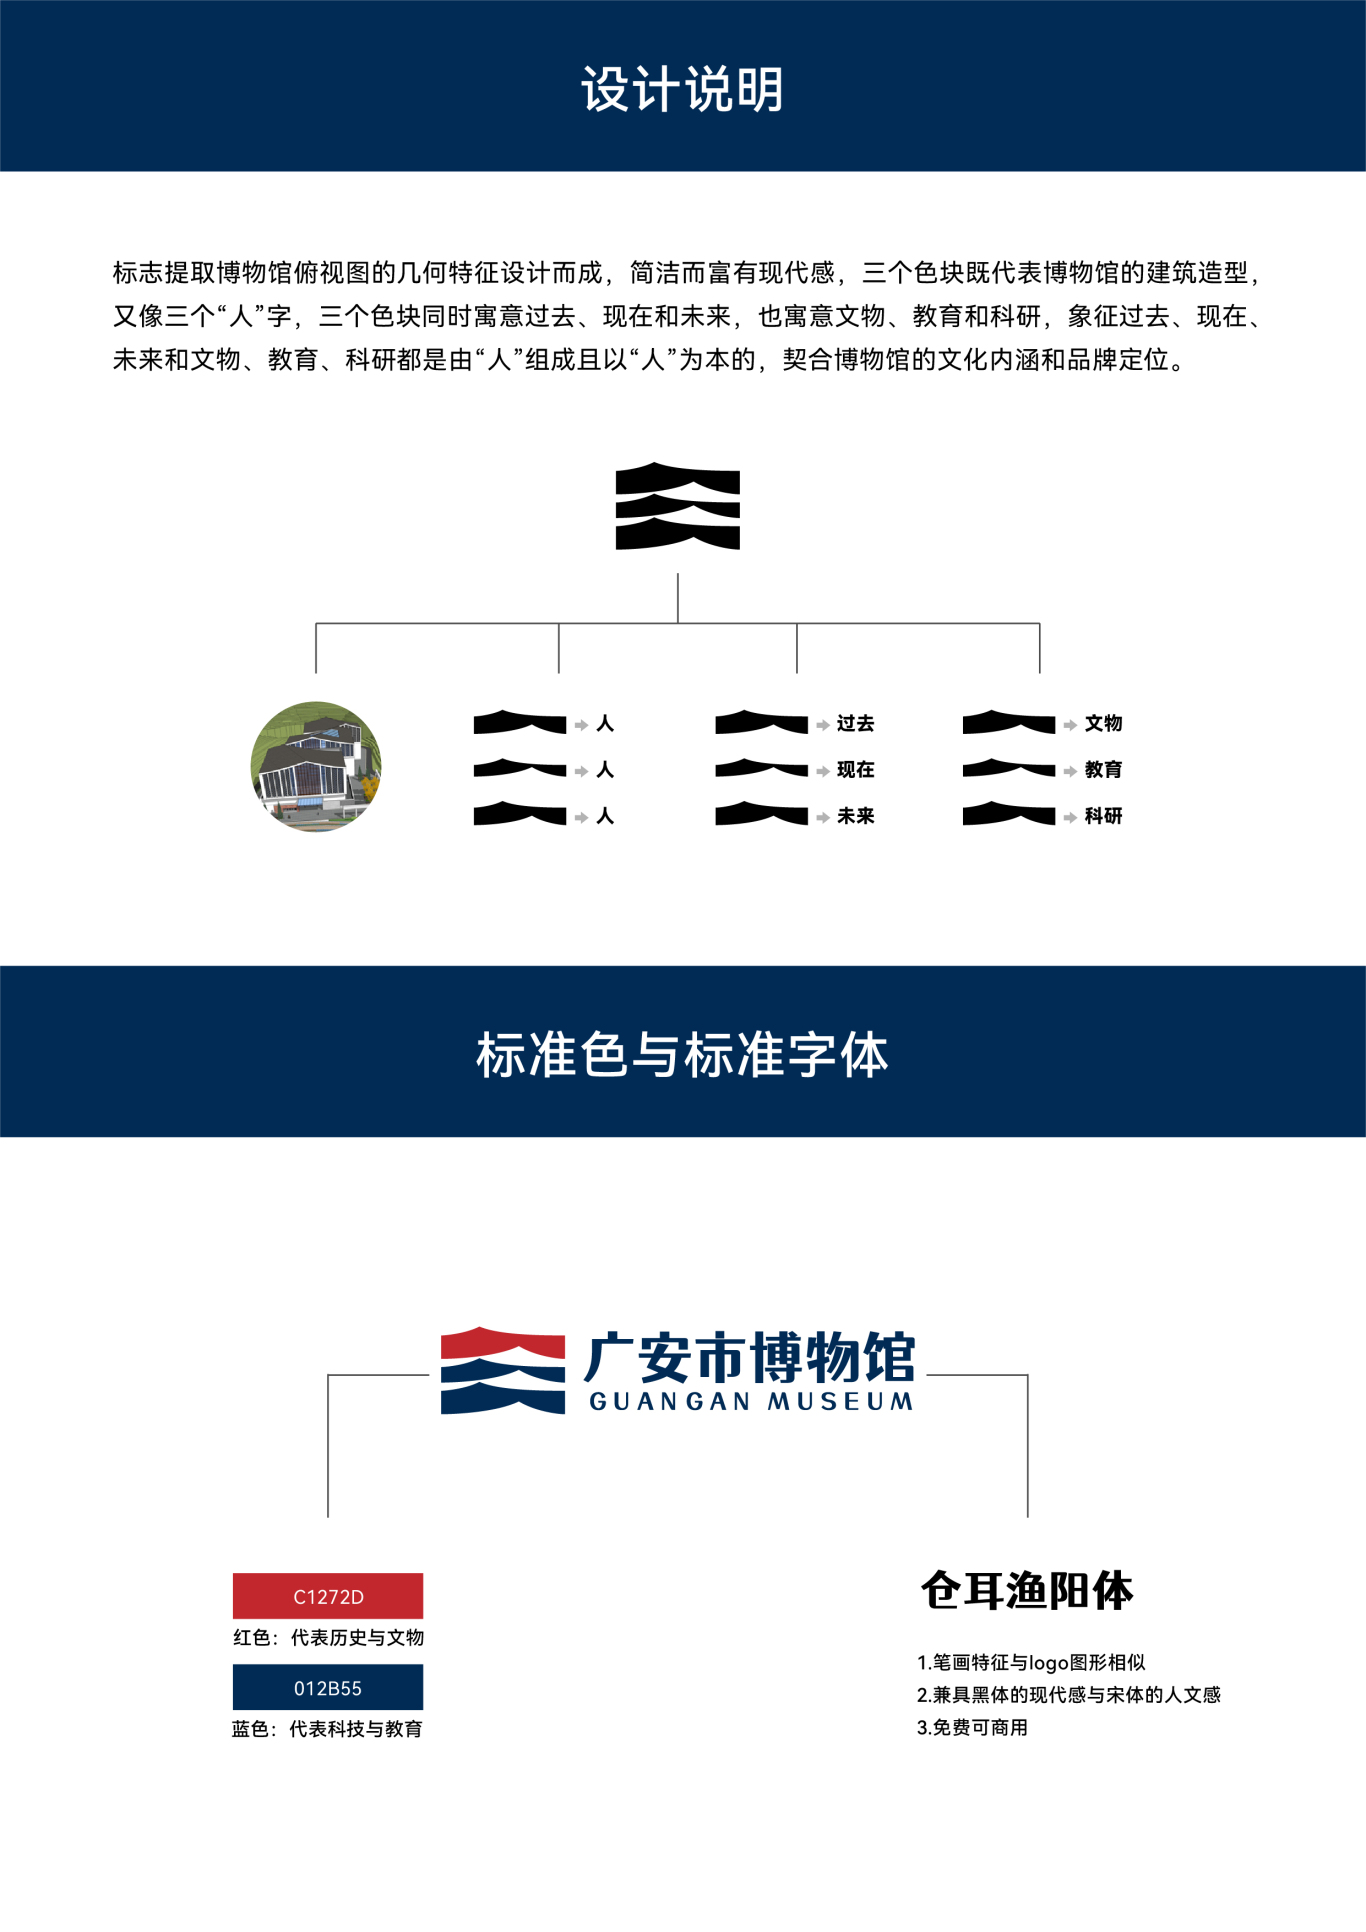 广安市博物馆馆标LOGO设计图1